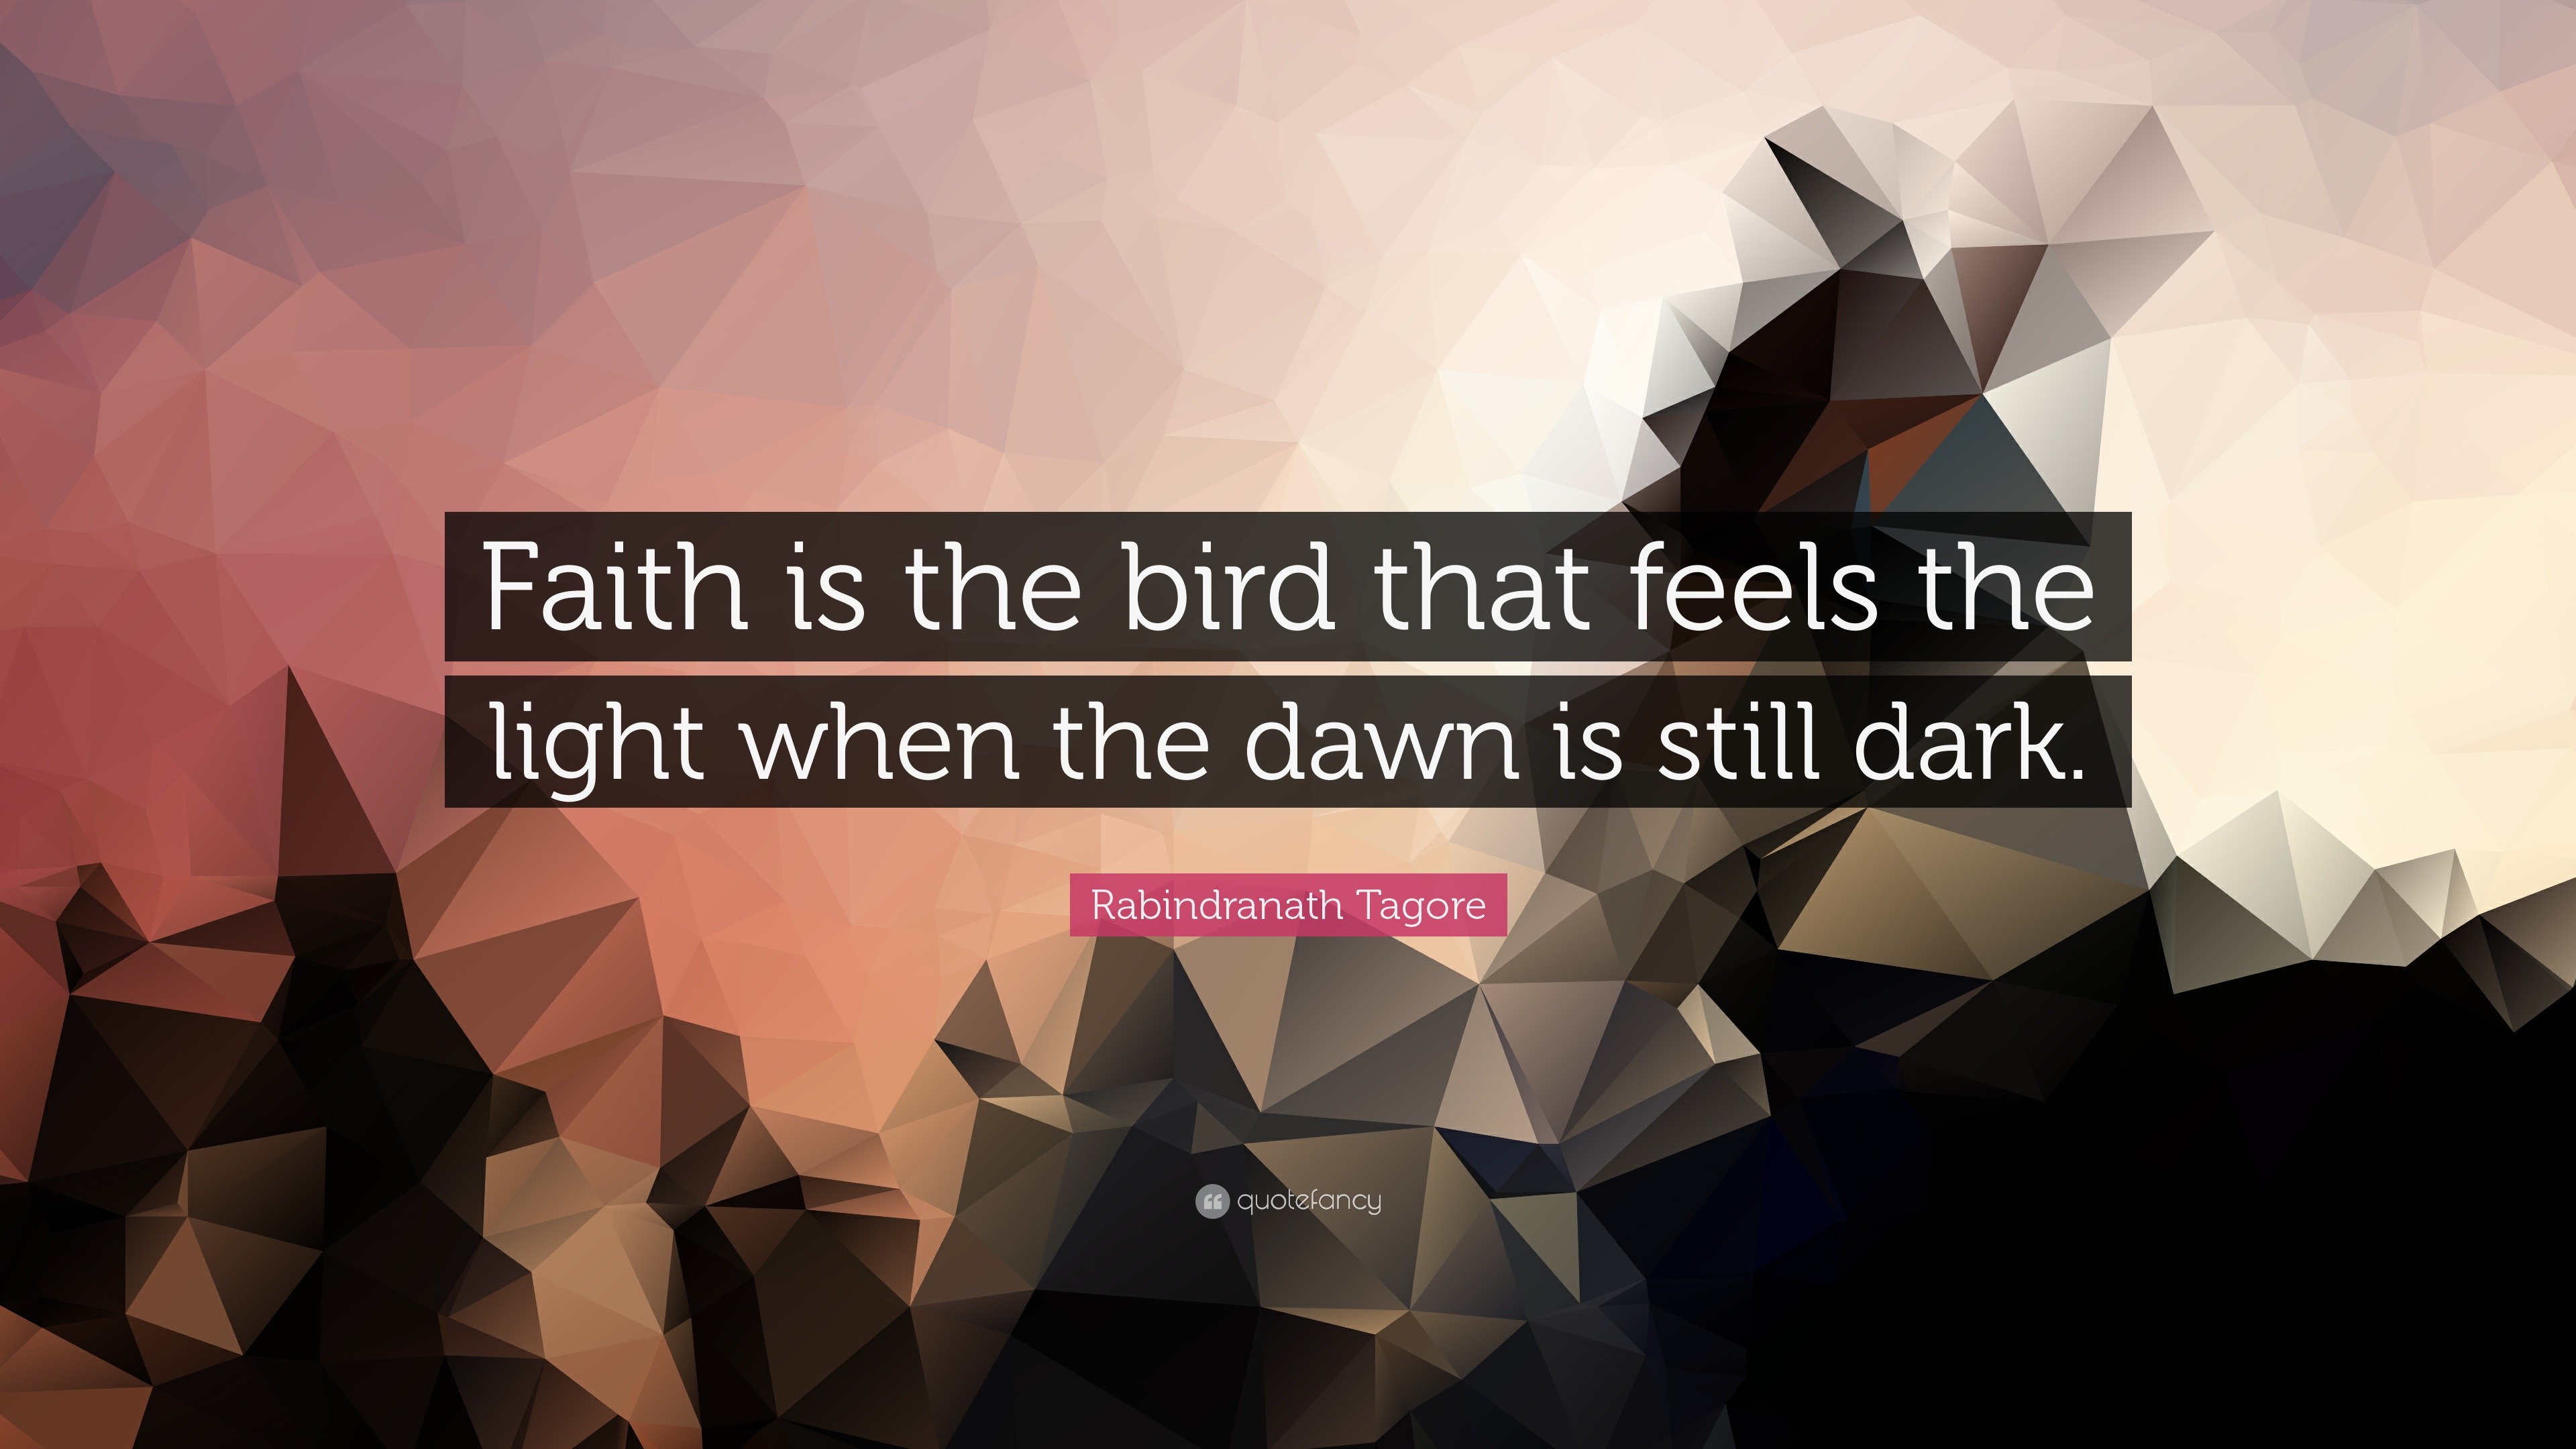 essay on faith is the bird that feels the light